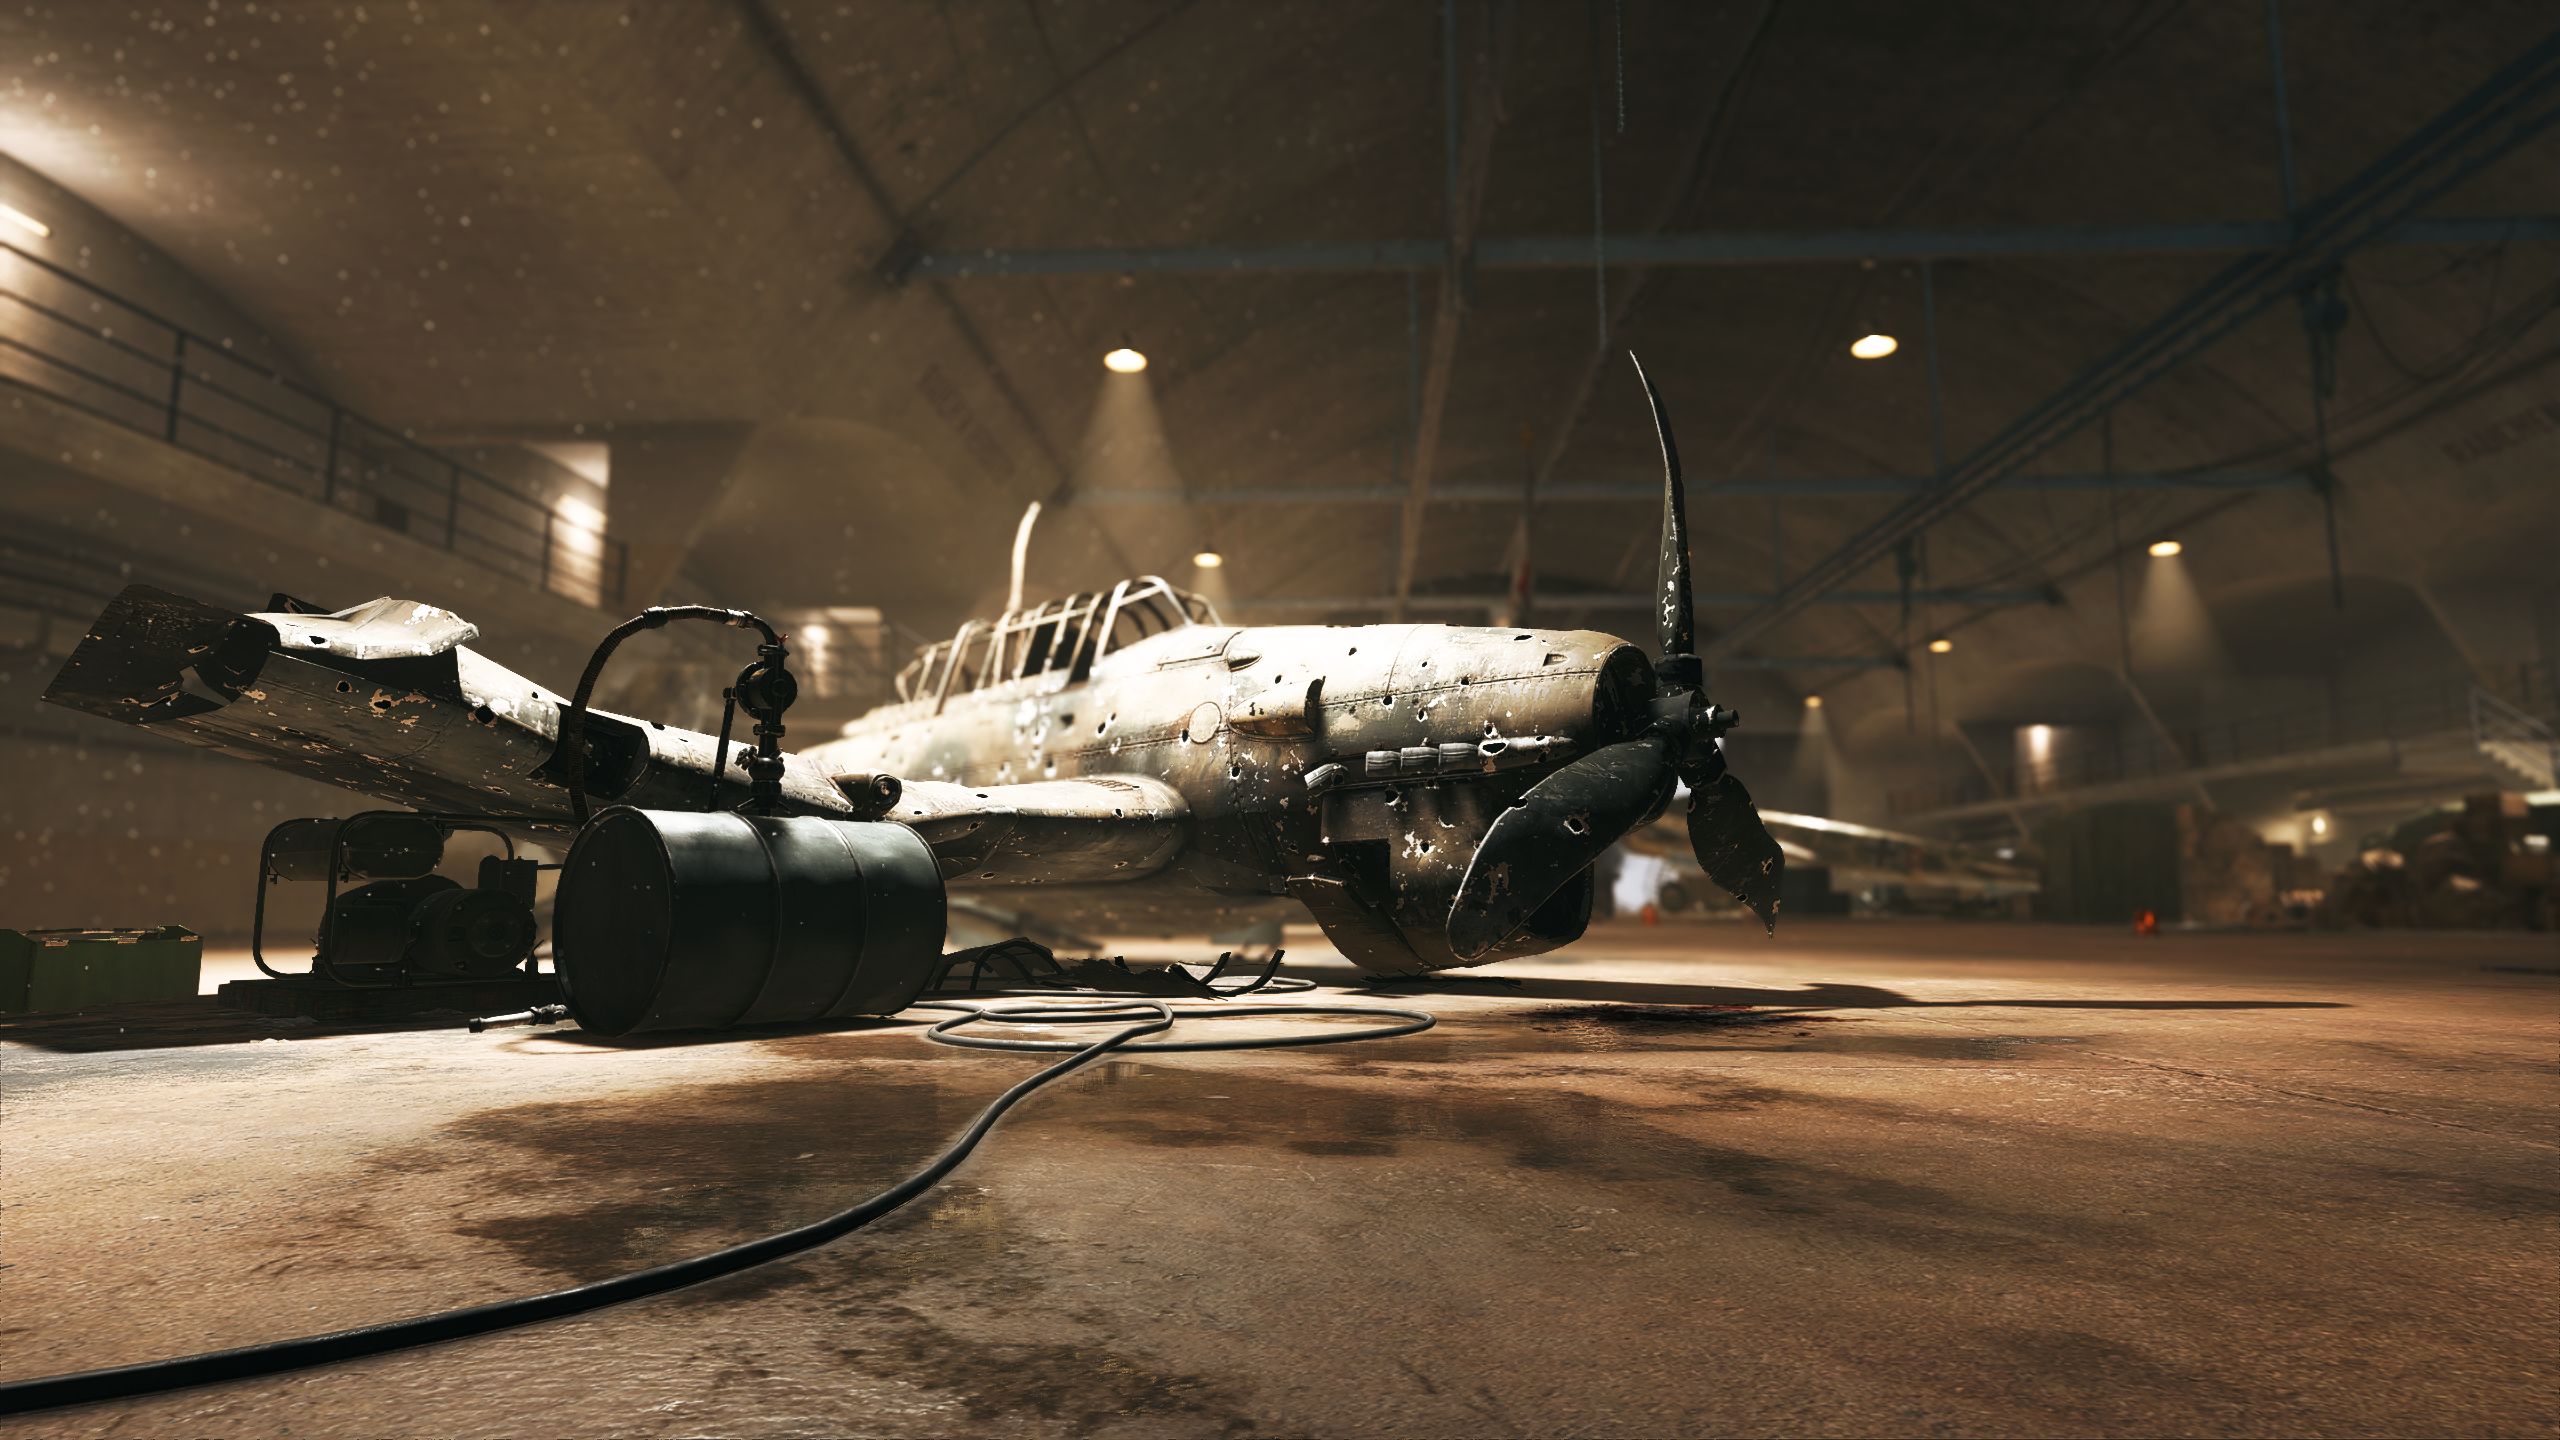 Hangar containing various old aircraft stock photo